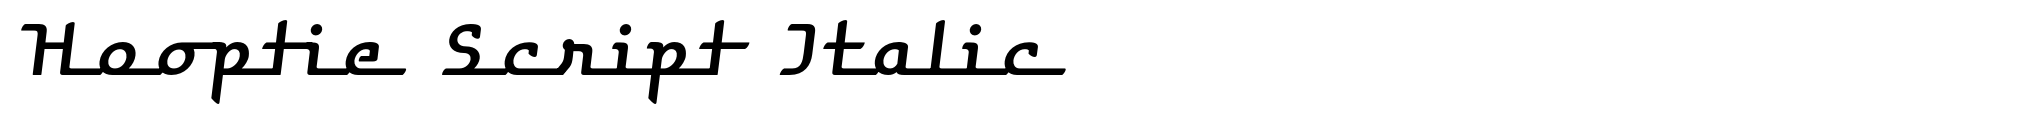 Hooptie Script Italic image